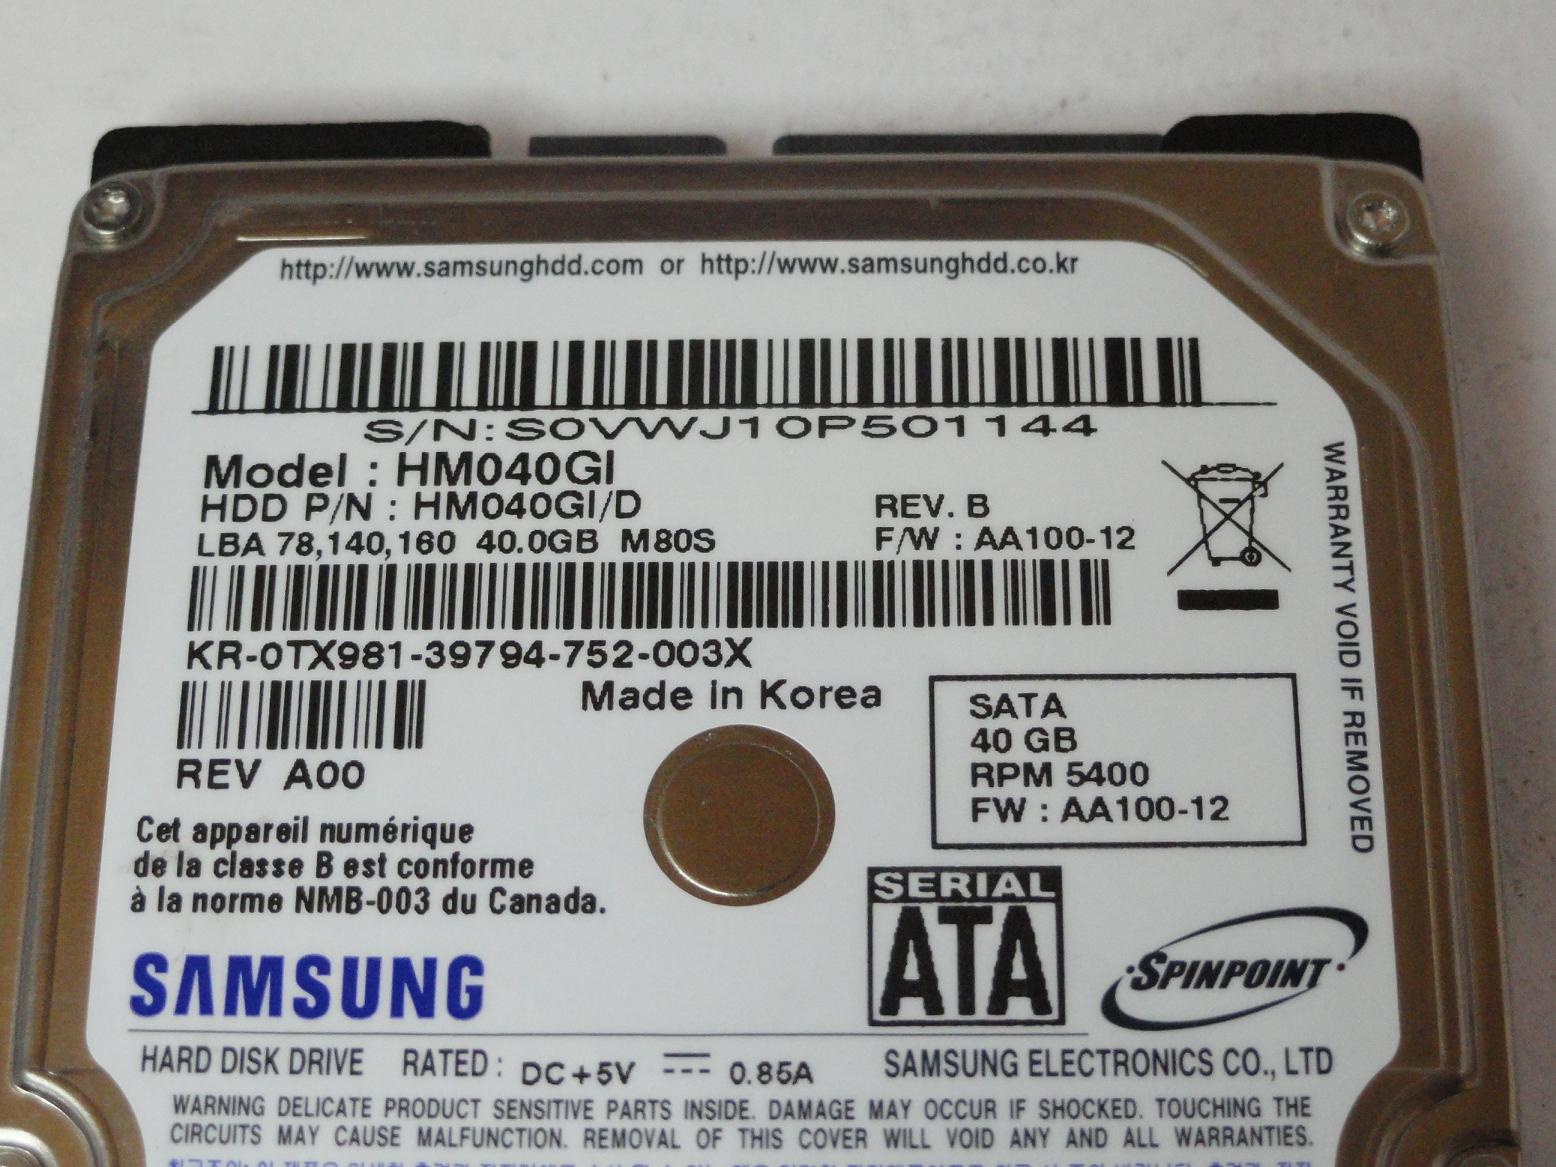 PR23593_HM040GI/D_Samsung Dell 40GB SATA 5400rpm 2.5in HDD - Image3